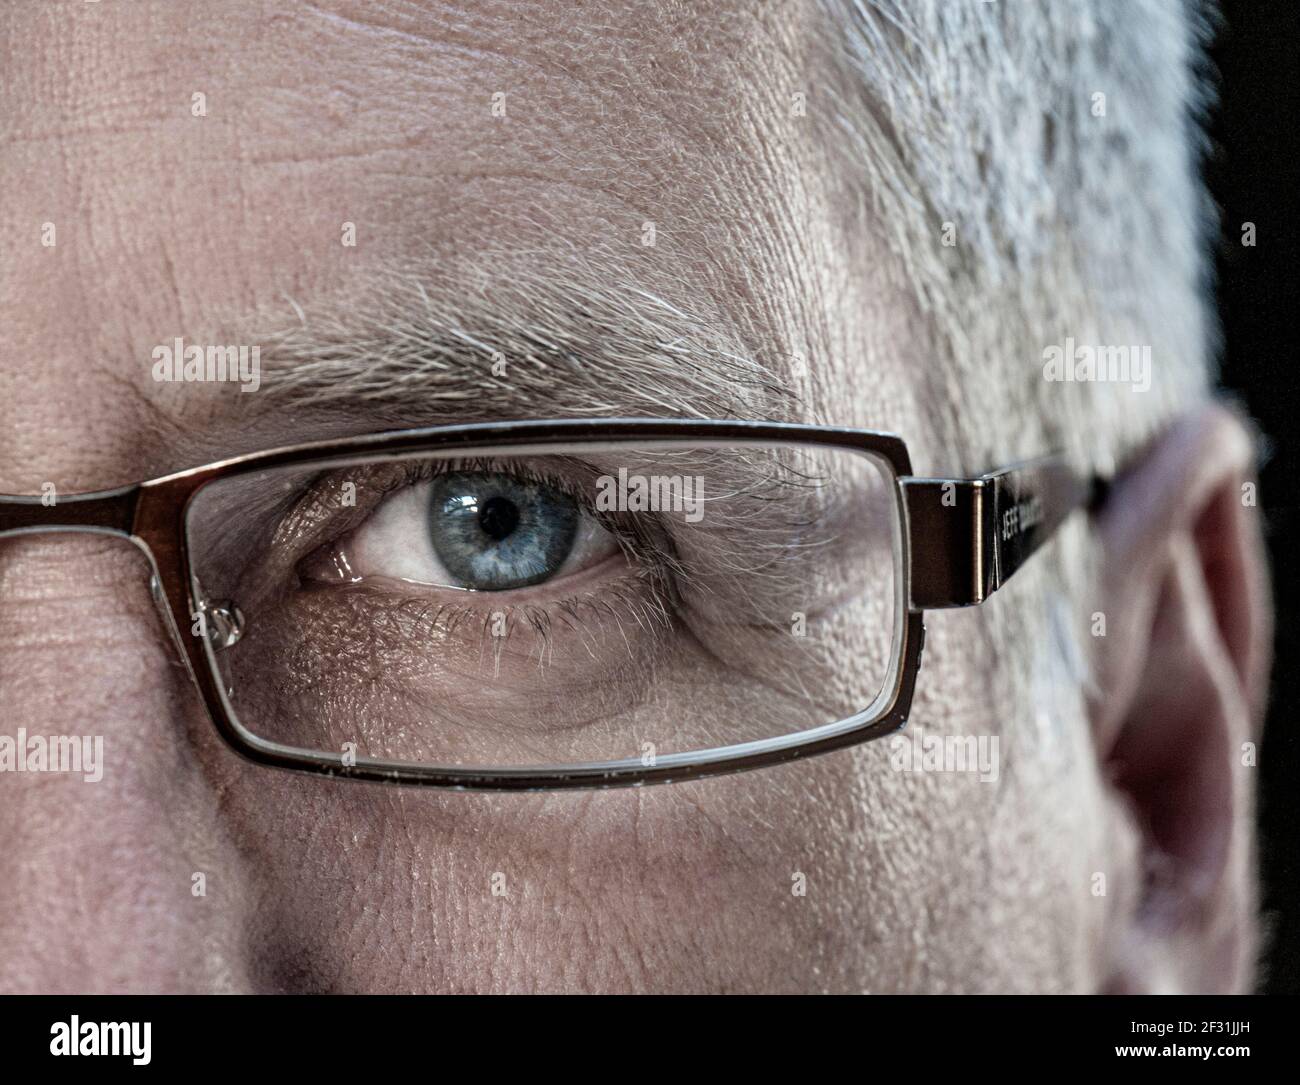 Homme demi-visage verres oeil mature homme 50-55 ans lunettes de vue de marque avec lunettes de vue bleu clair vue directe vers l'avant Banque D'Images